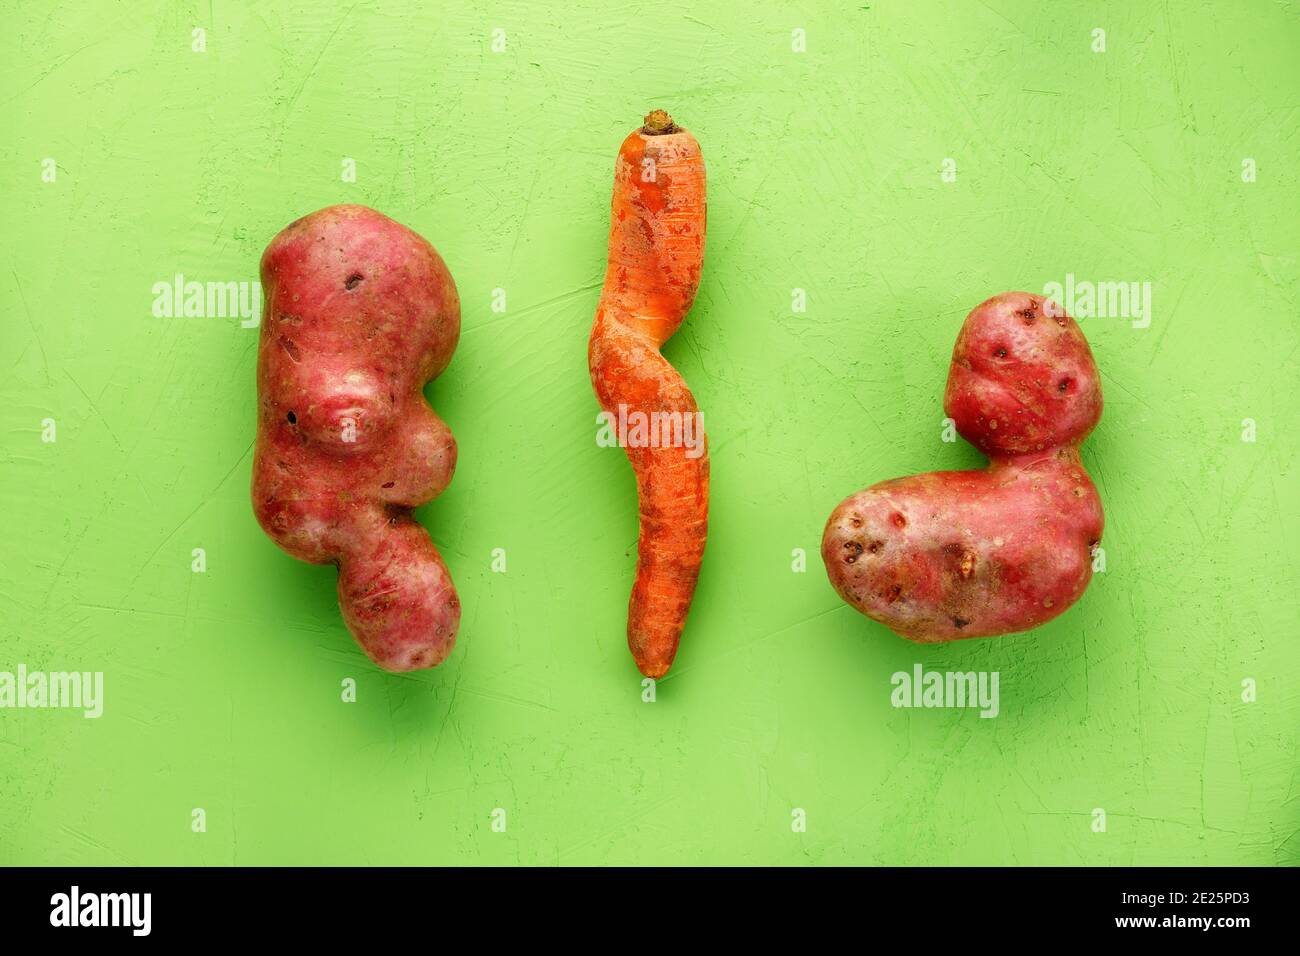 Des légumes rigoles, des pommes de terre grumeleuses et une carotte tordue sur fond vert. Notion : légumes grossiers ou déchets alimentaires. Vue de dessus, espace de copie. Banque D'Images